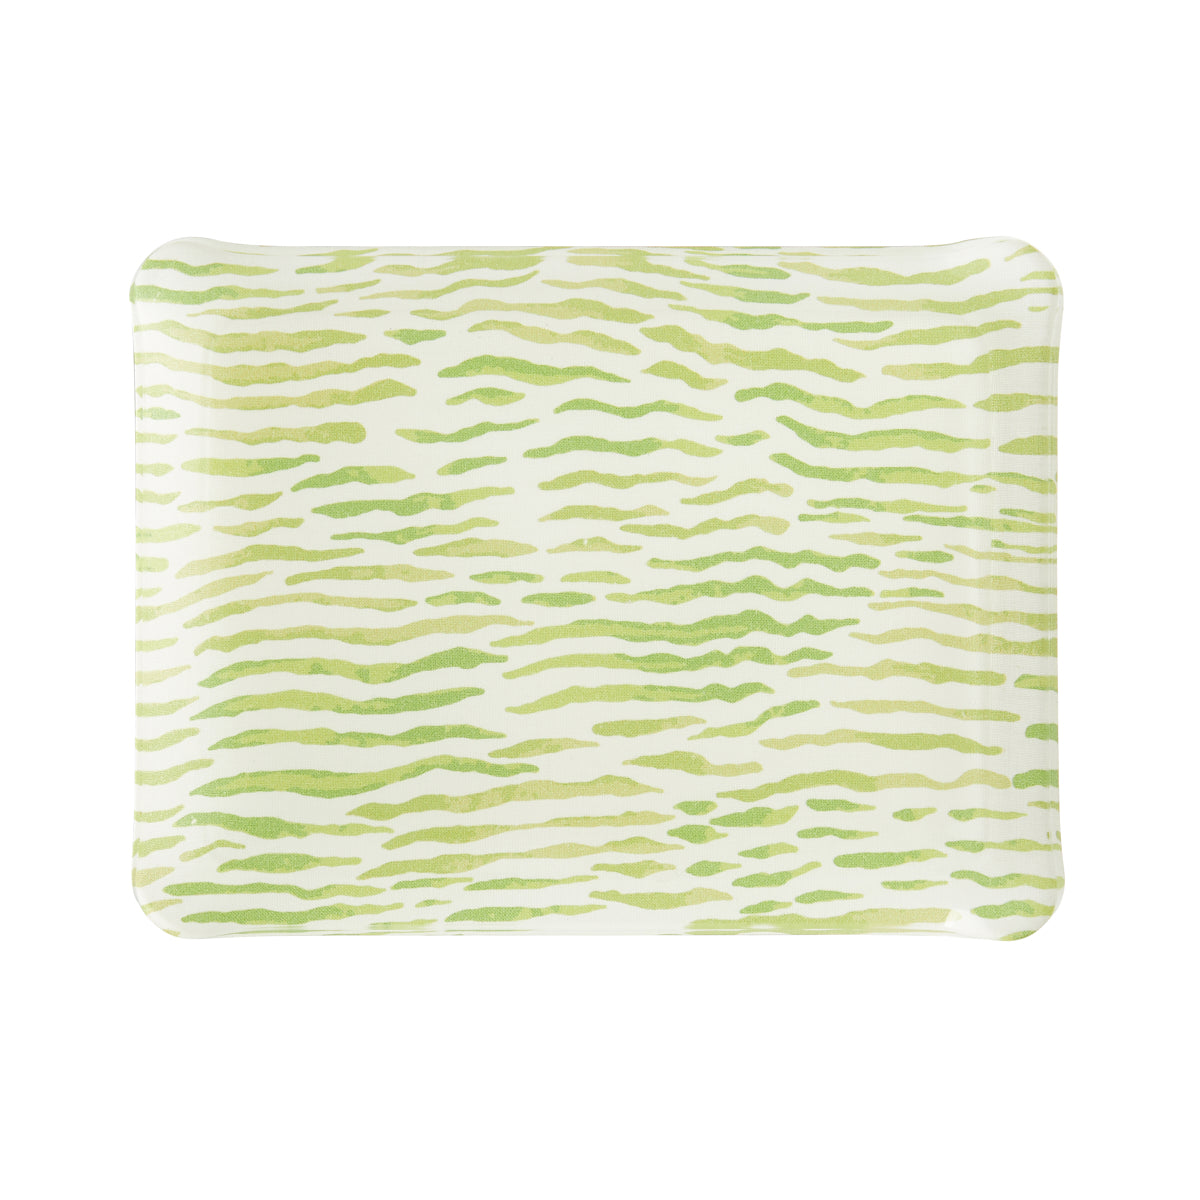 Nina Campbell Fabric Tray Small - Arles Green